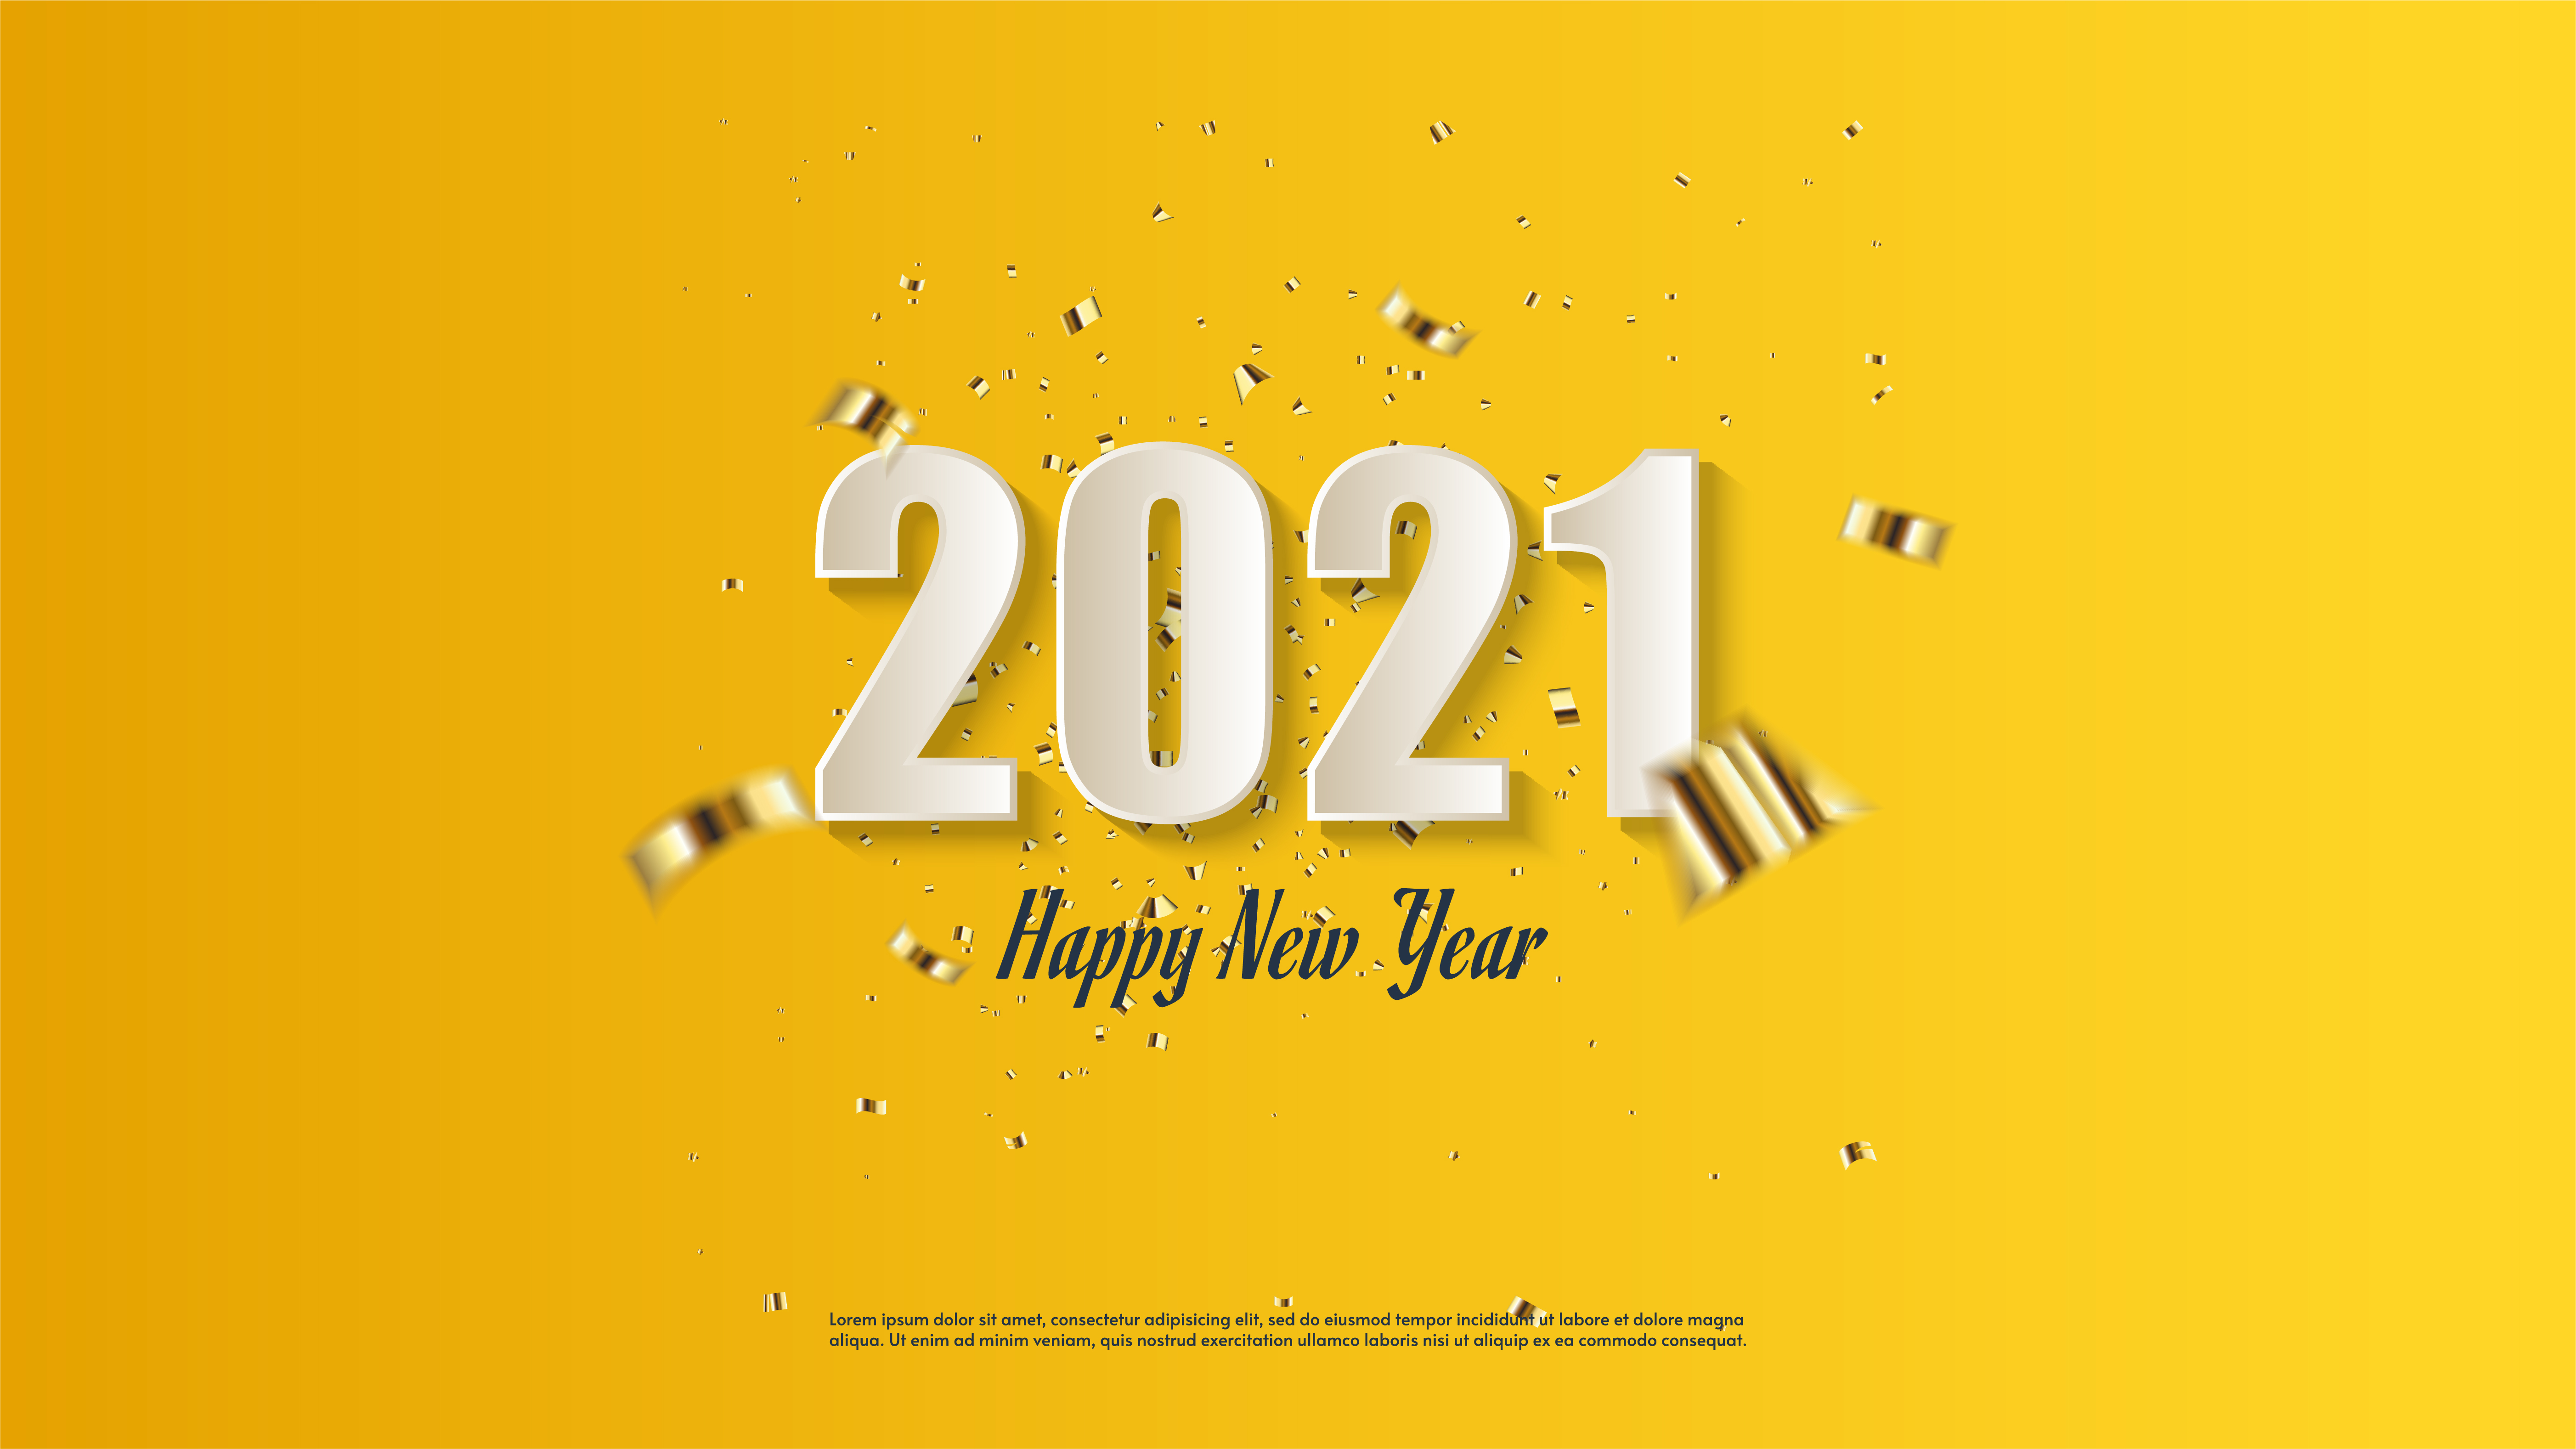 2021新年快樂圖 免費下載 | 天天瘋後製